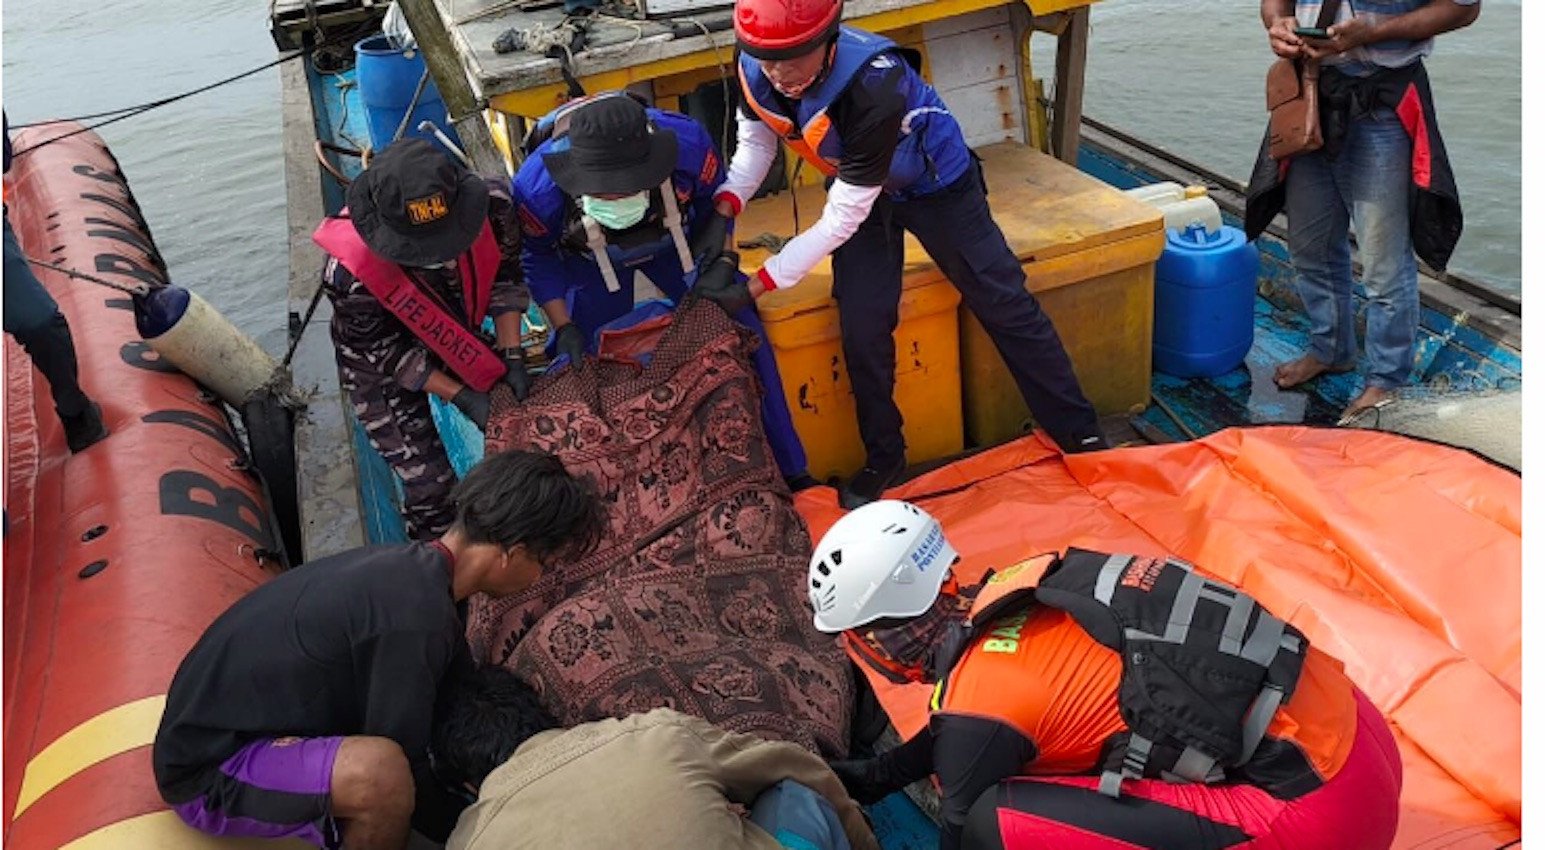 tni al temukan korban tenggelam di laut setelah 3 hari pencarian